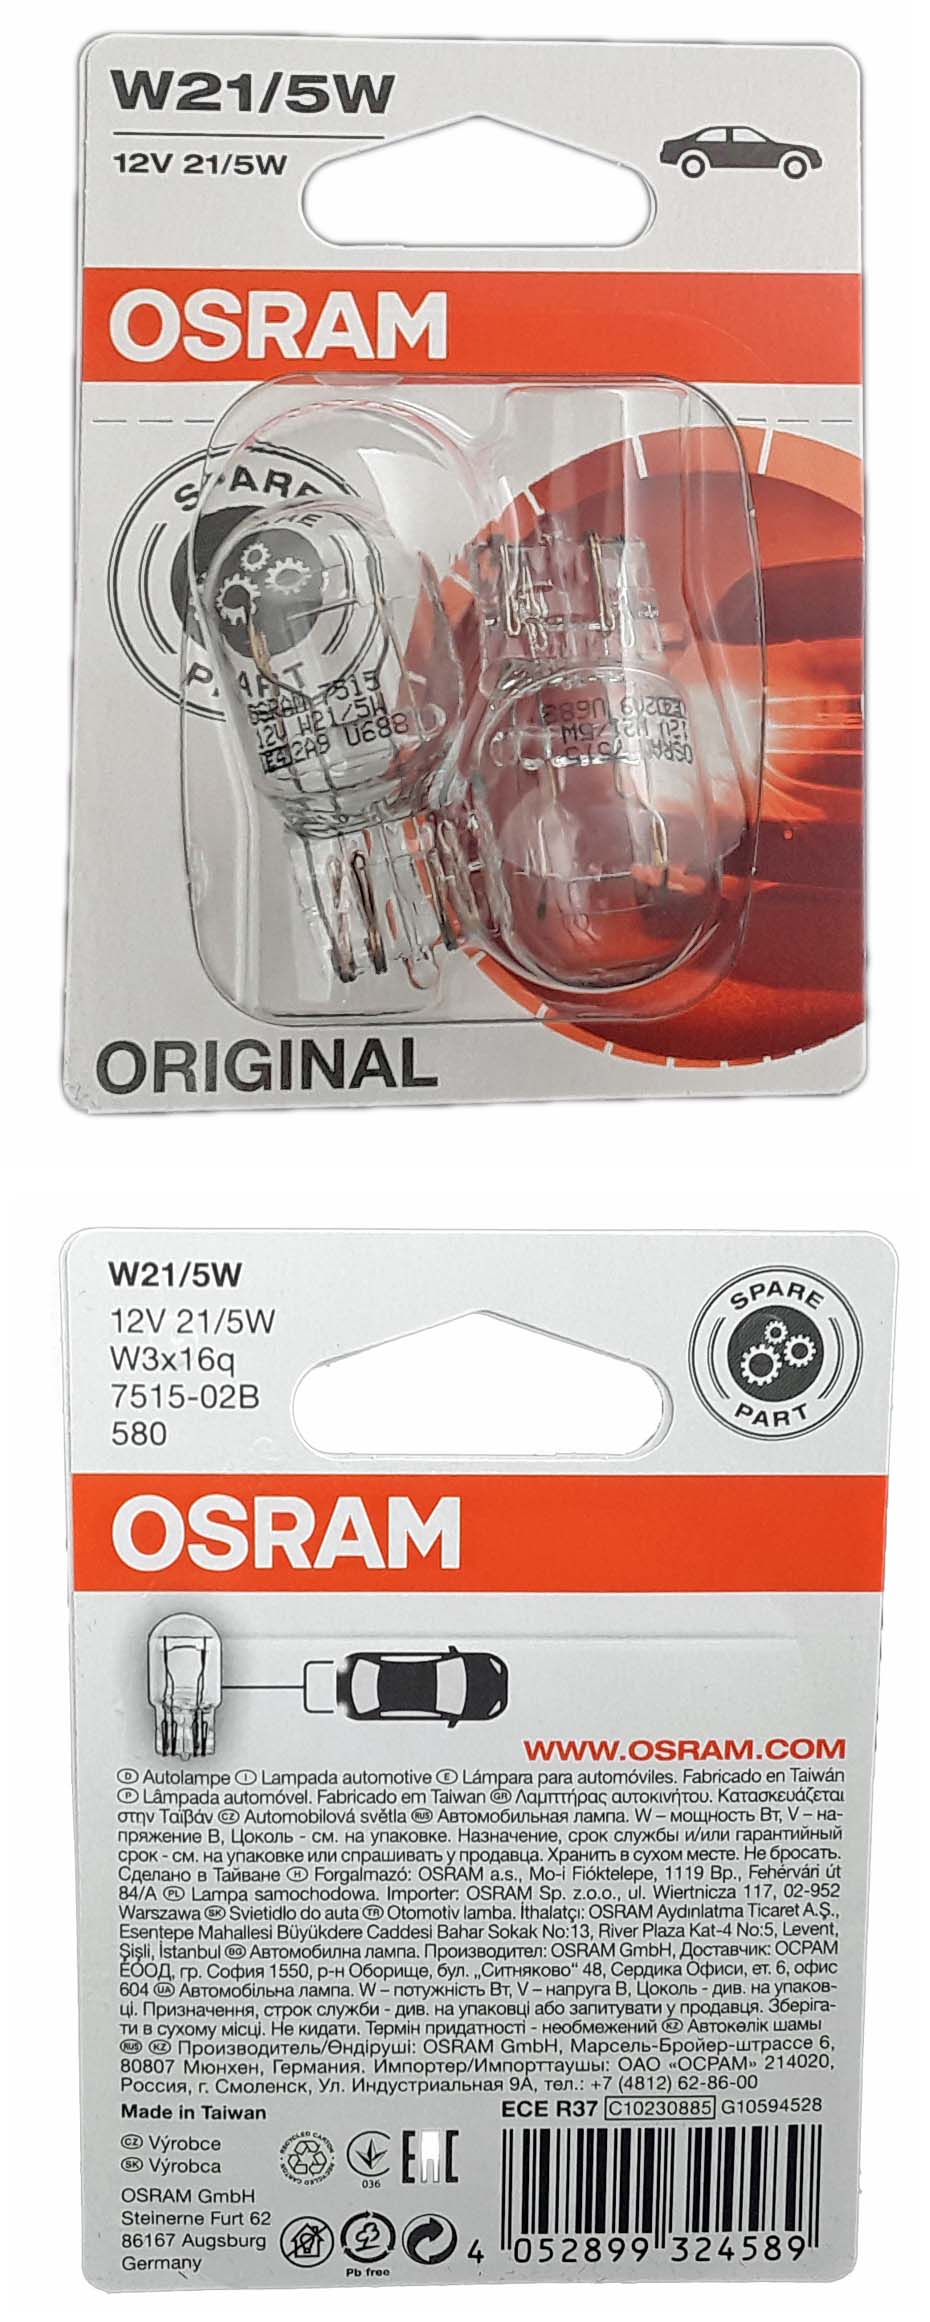 W21/5W OSRAM Original Spare Part 2st. 12V 21W/5W W3x16q Blister 7515-02B